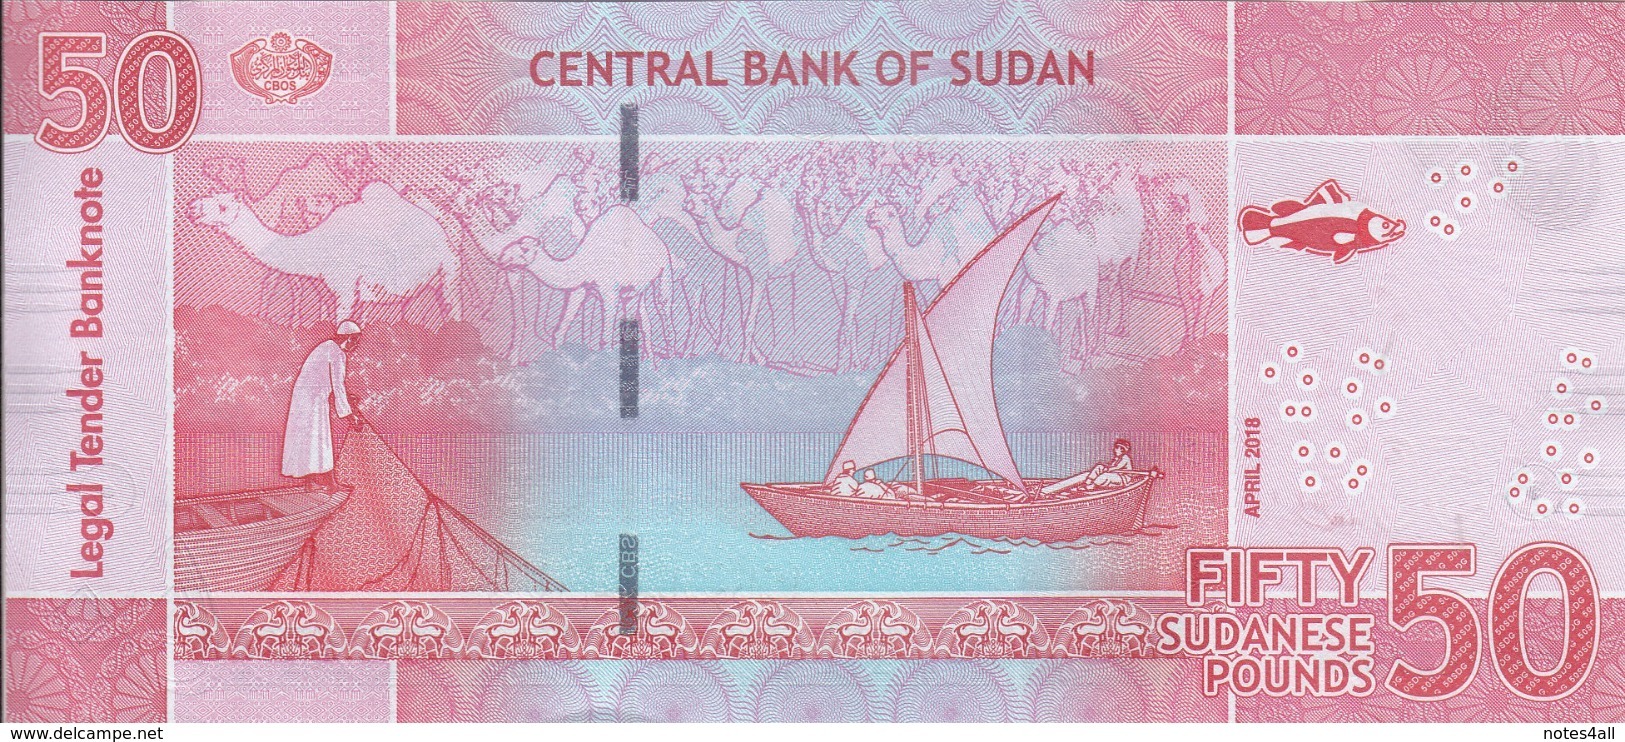 SUDAN 50 POUNDS 2018 P-NEW GLOSSY DARK COLOR TYPE UNC */* - Sudan